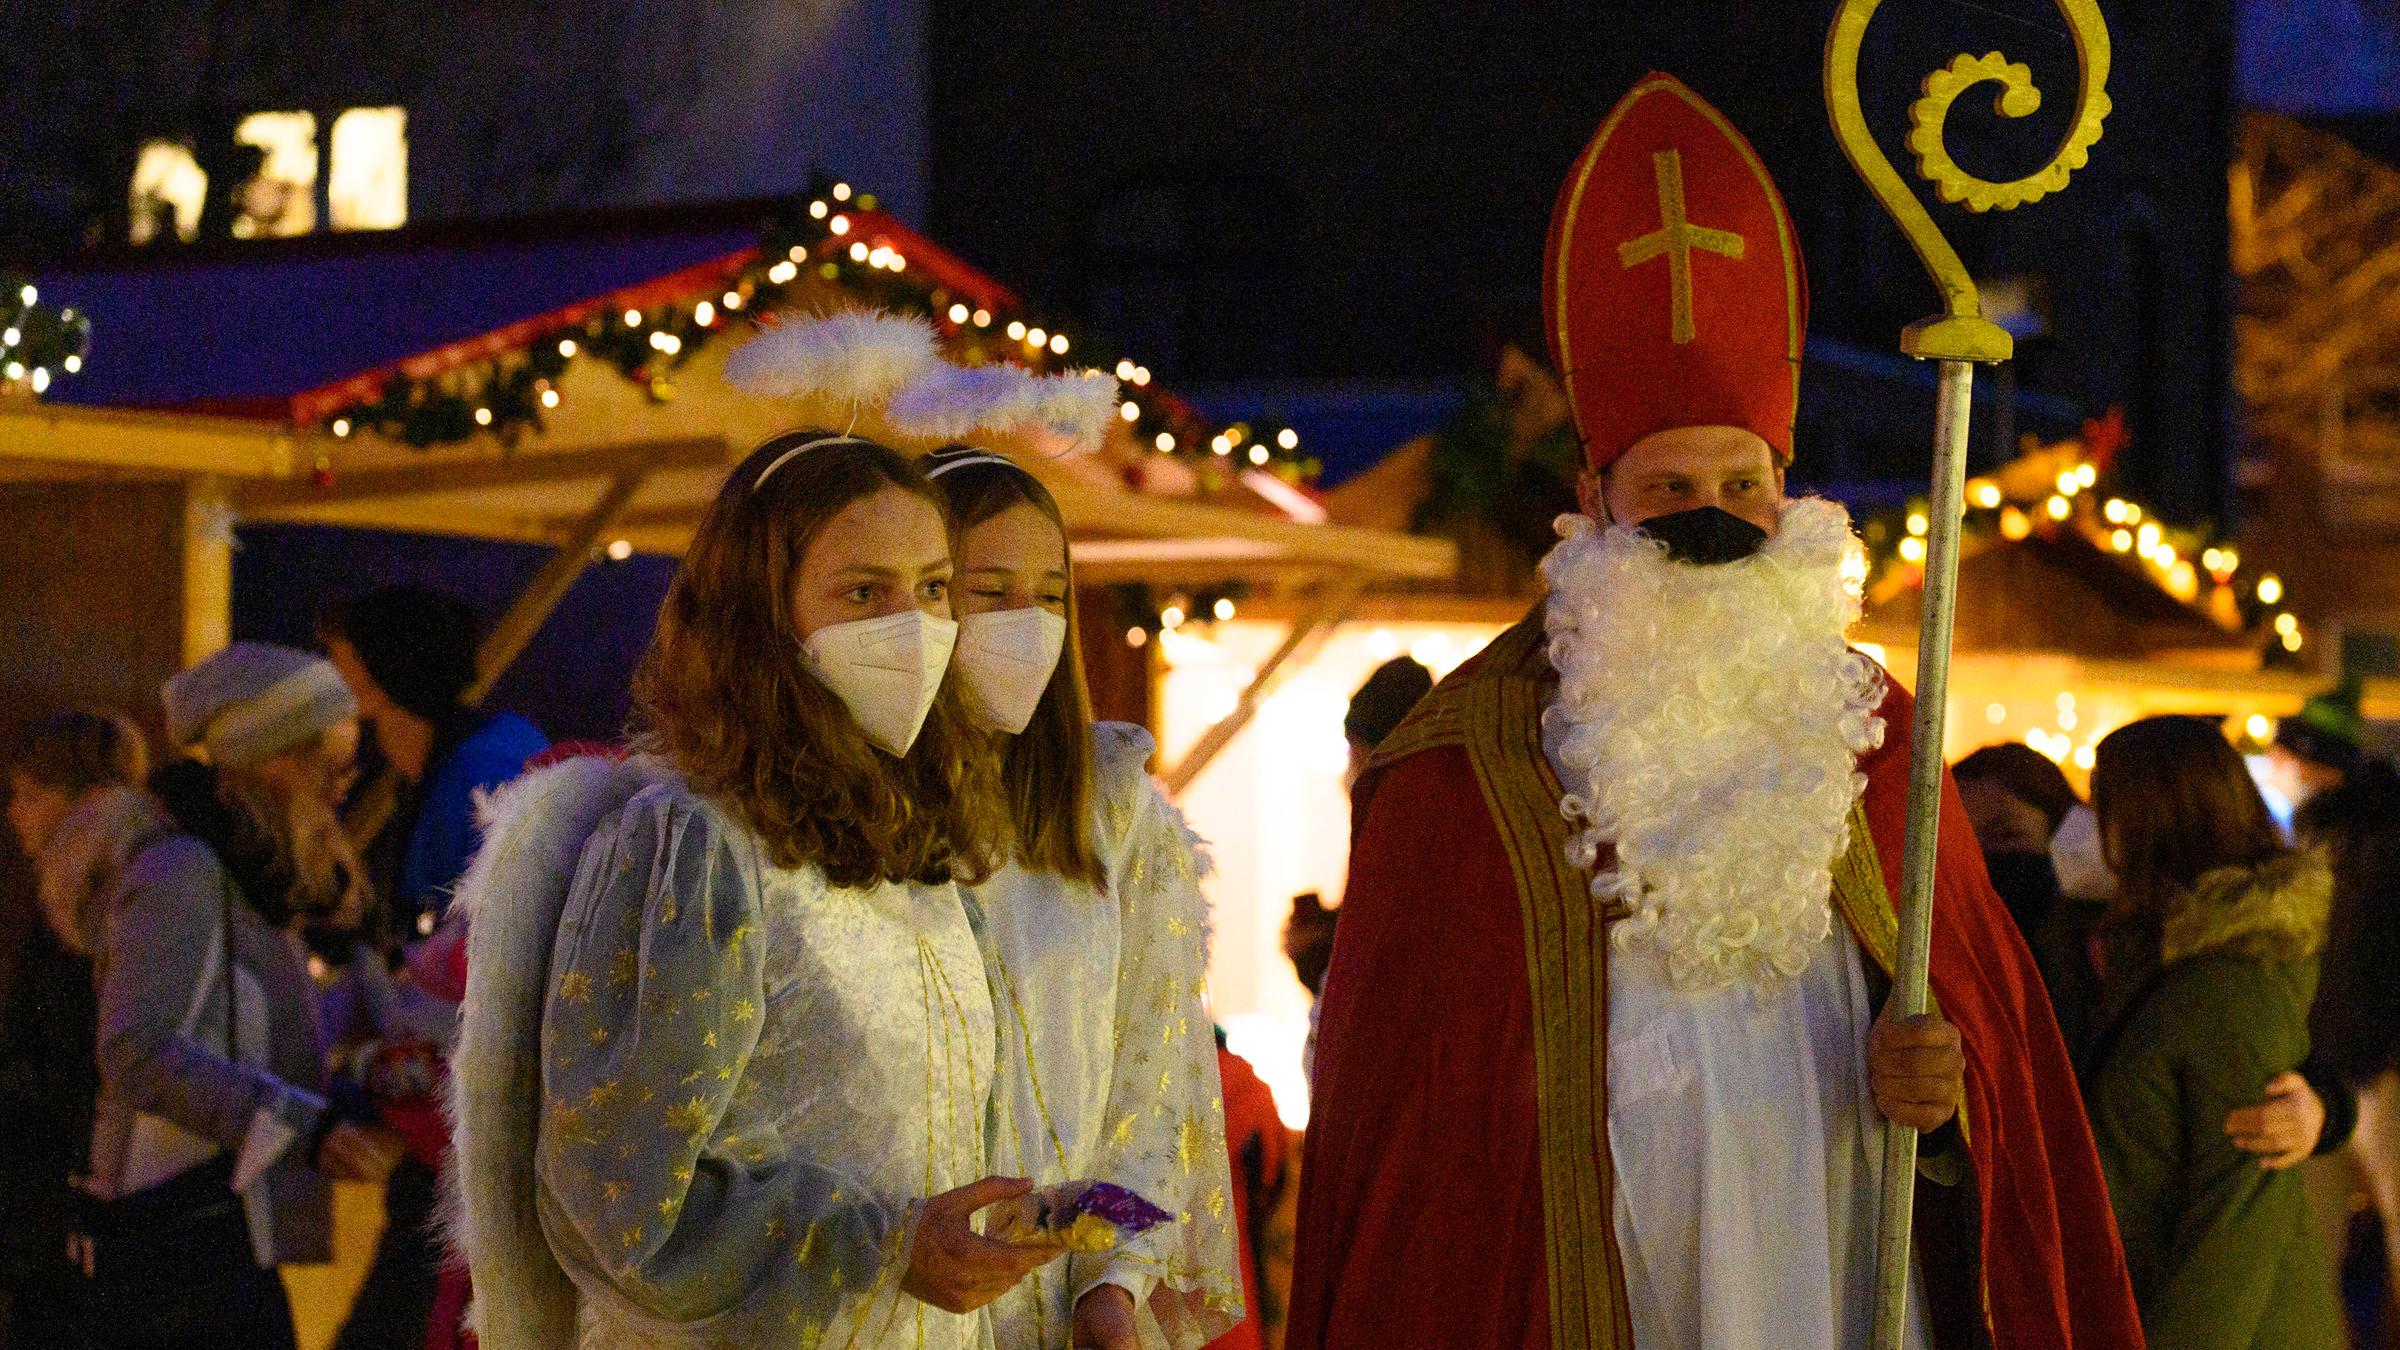 Weihnachtsengel und Weihnachtsmann mit Corona-Masken auf dem Königsdorf...</p>

                        <a href=